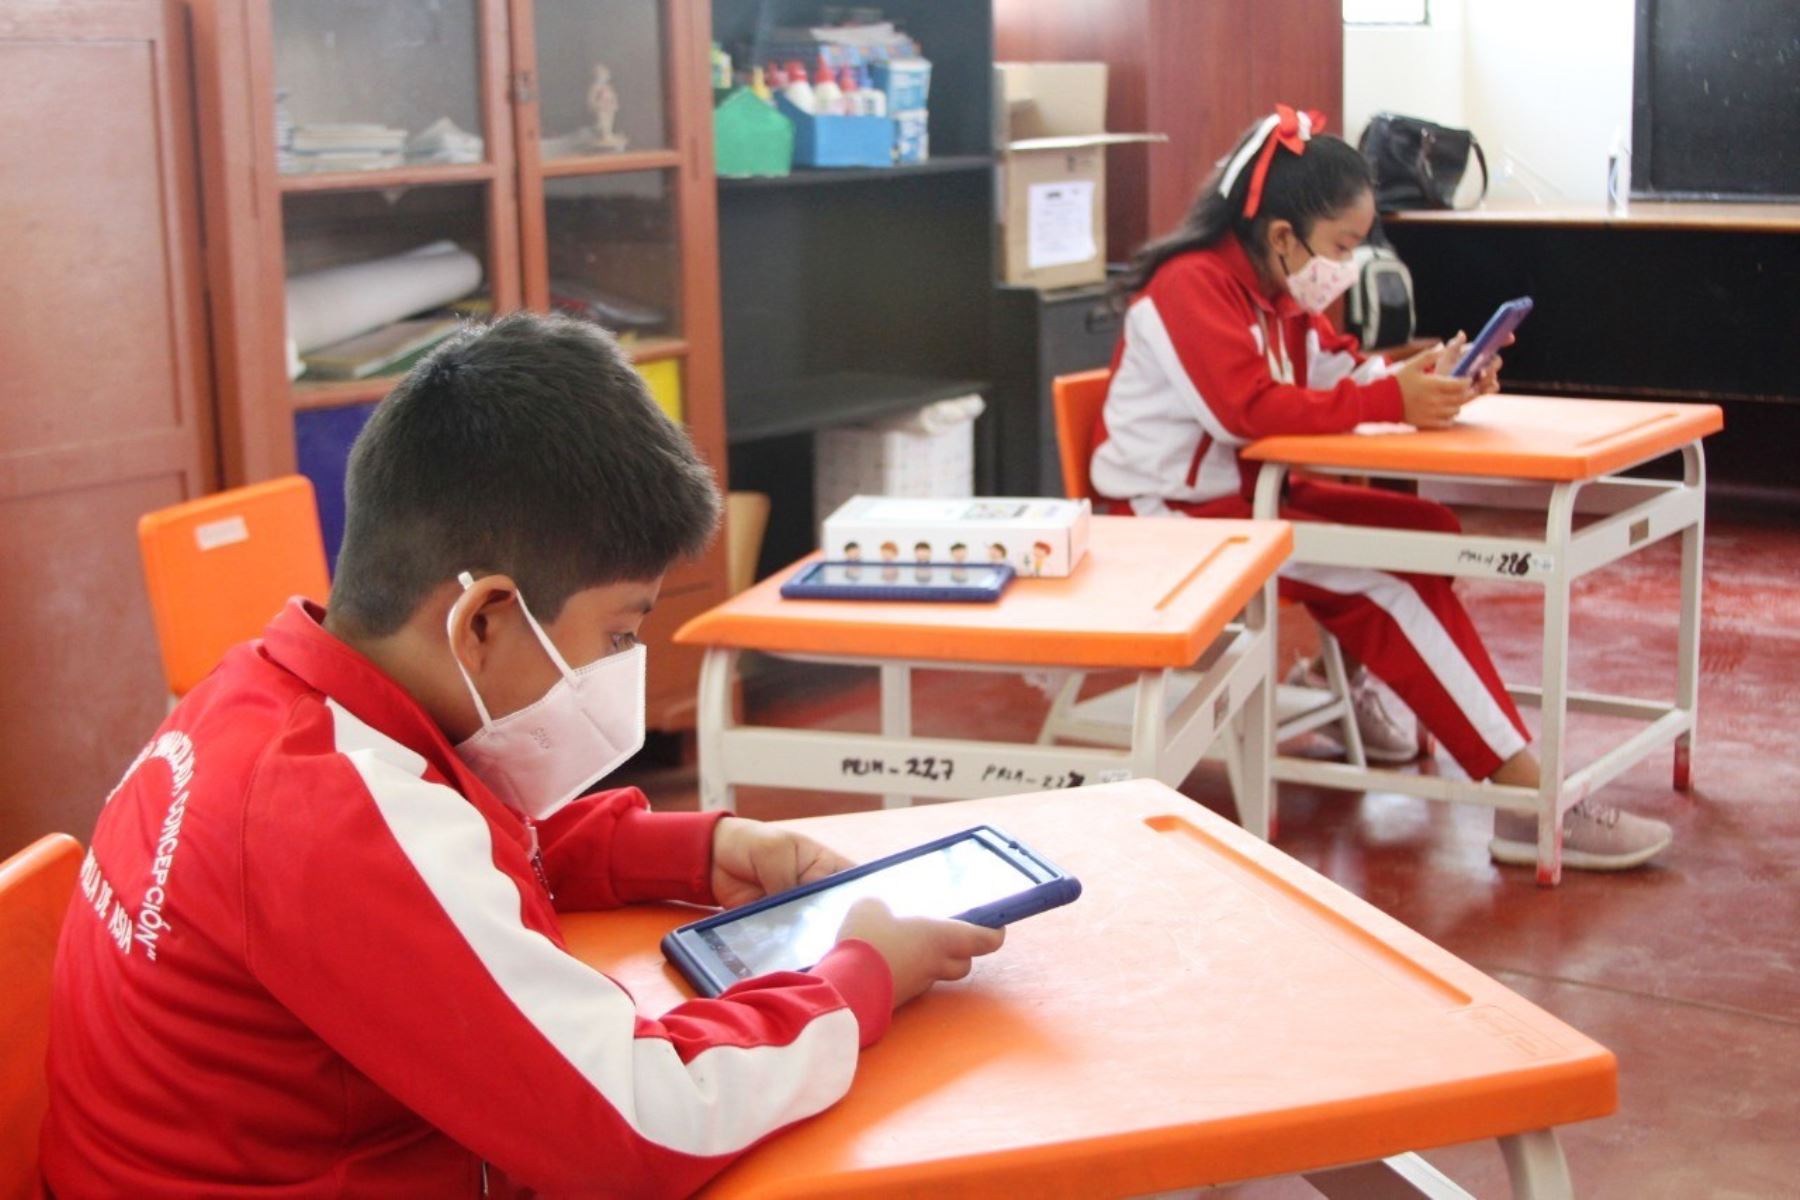 El cierre prolongado de escuelas en el Perú por la pandemia ha impactado en los aprendizajes de los estudiantes.